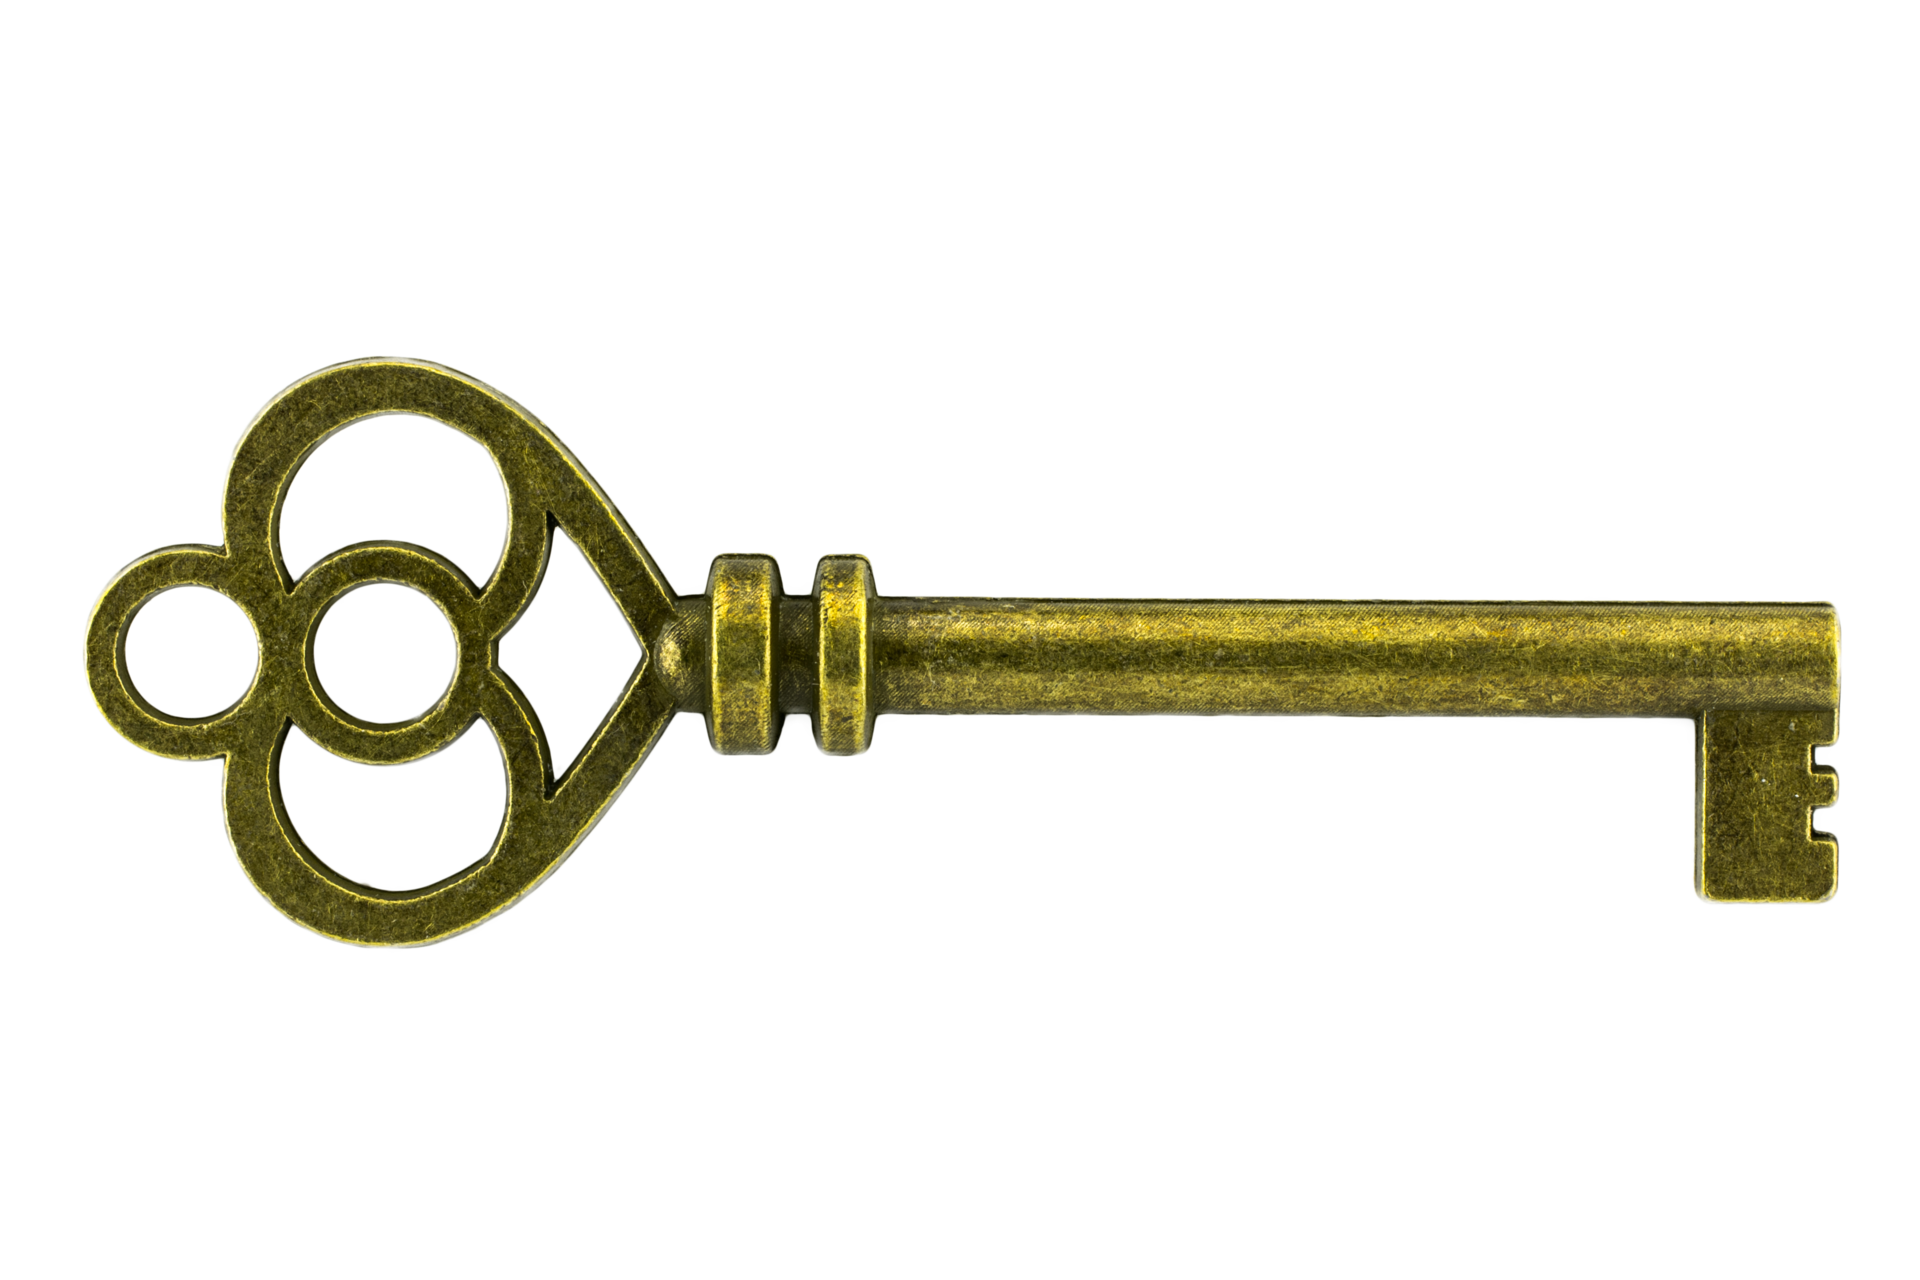 Chìa khóa cổ - Sử dụng chìa khóa cổ để khóa kén của bạn sẽ tạo ra sự độc đáo và quý phái. Với thiết kế cổ điển và đầy sức hút, chìa khóa này sẽ mang lại cho bạn cảm giác lịch sử.